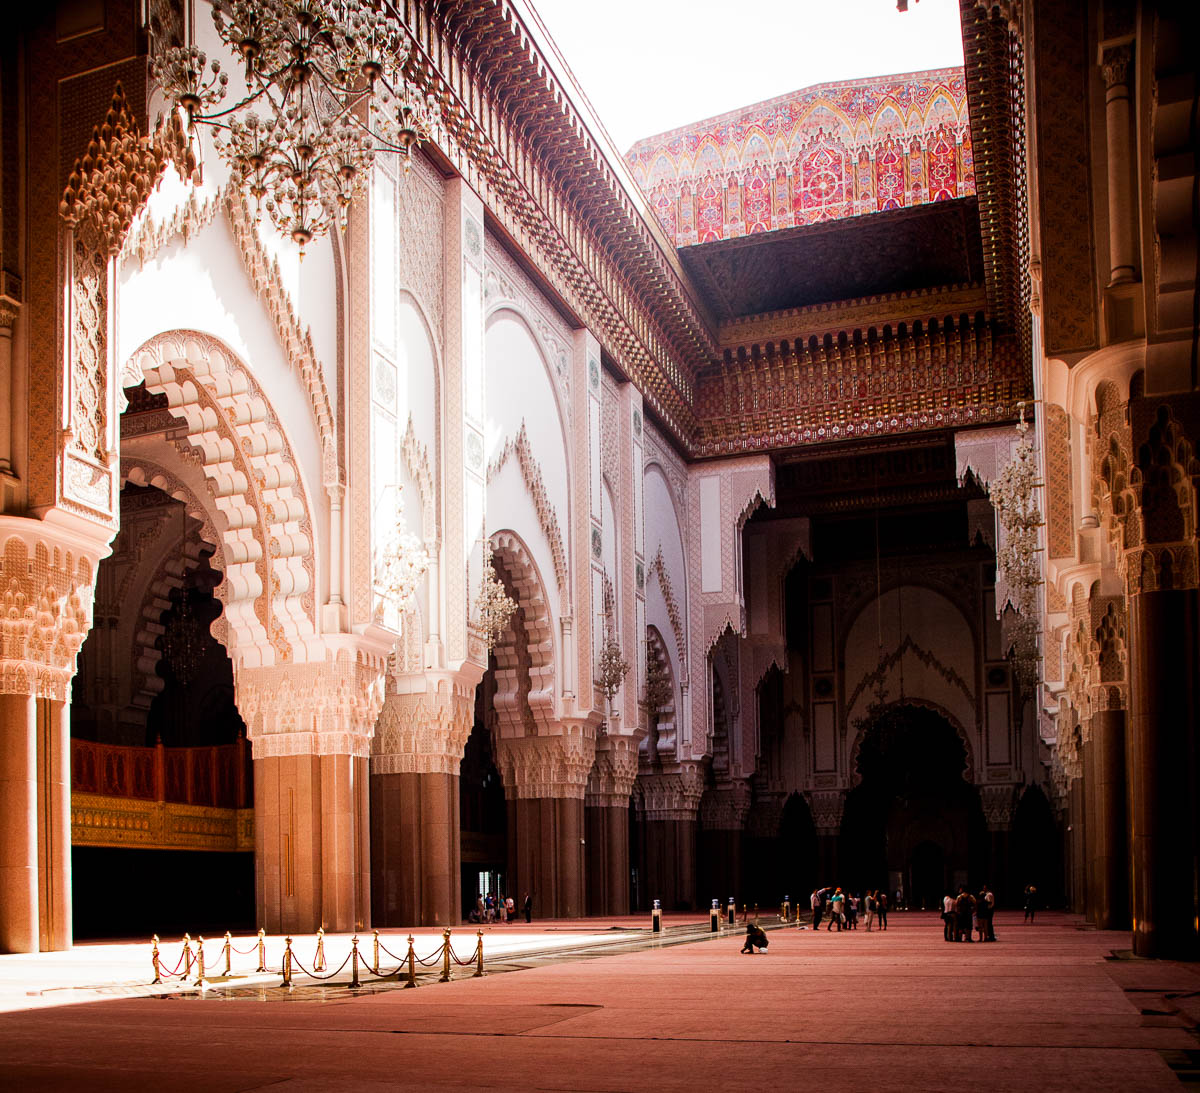 Hassan II Mosque or Grande Mosquée Hassan II, Casablanca, Morocco